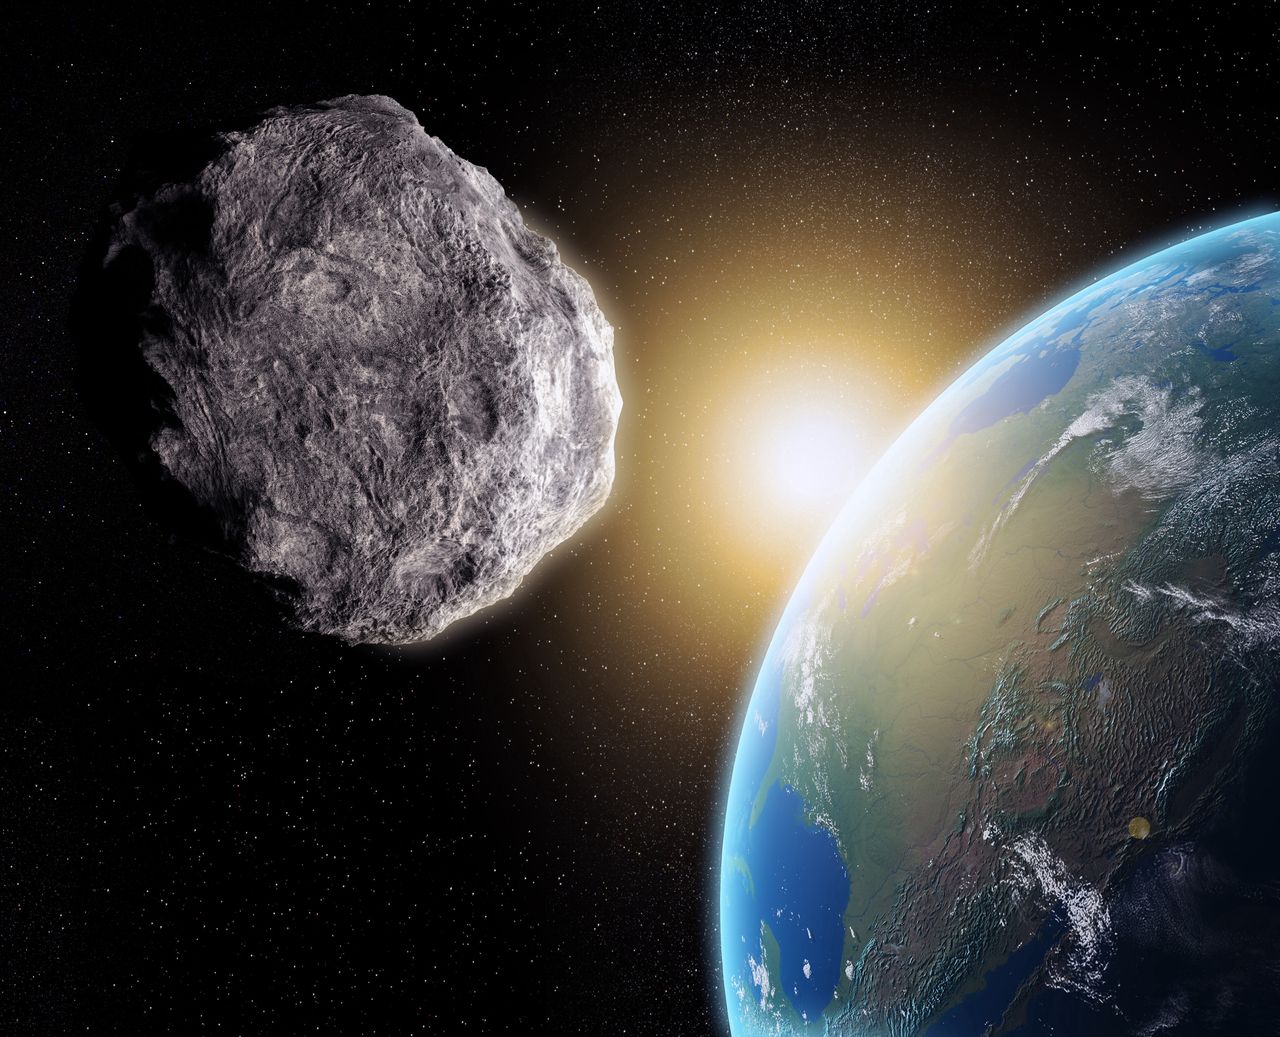 Kopalnia na asteroidzie. Misja startuje w listopadzie